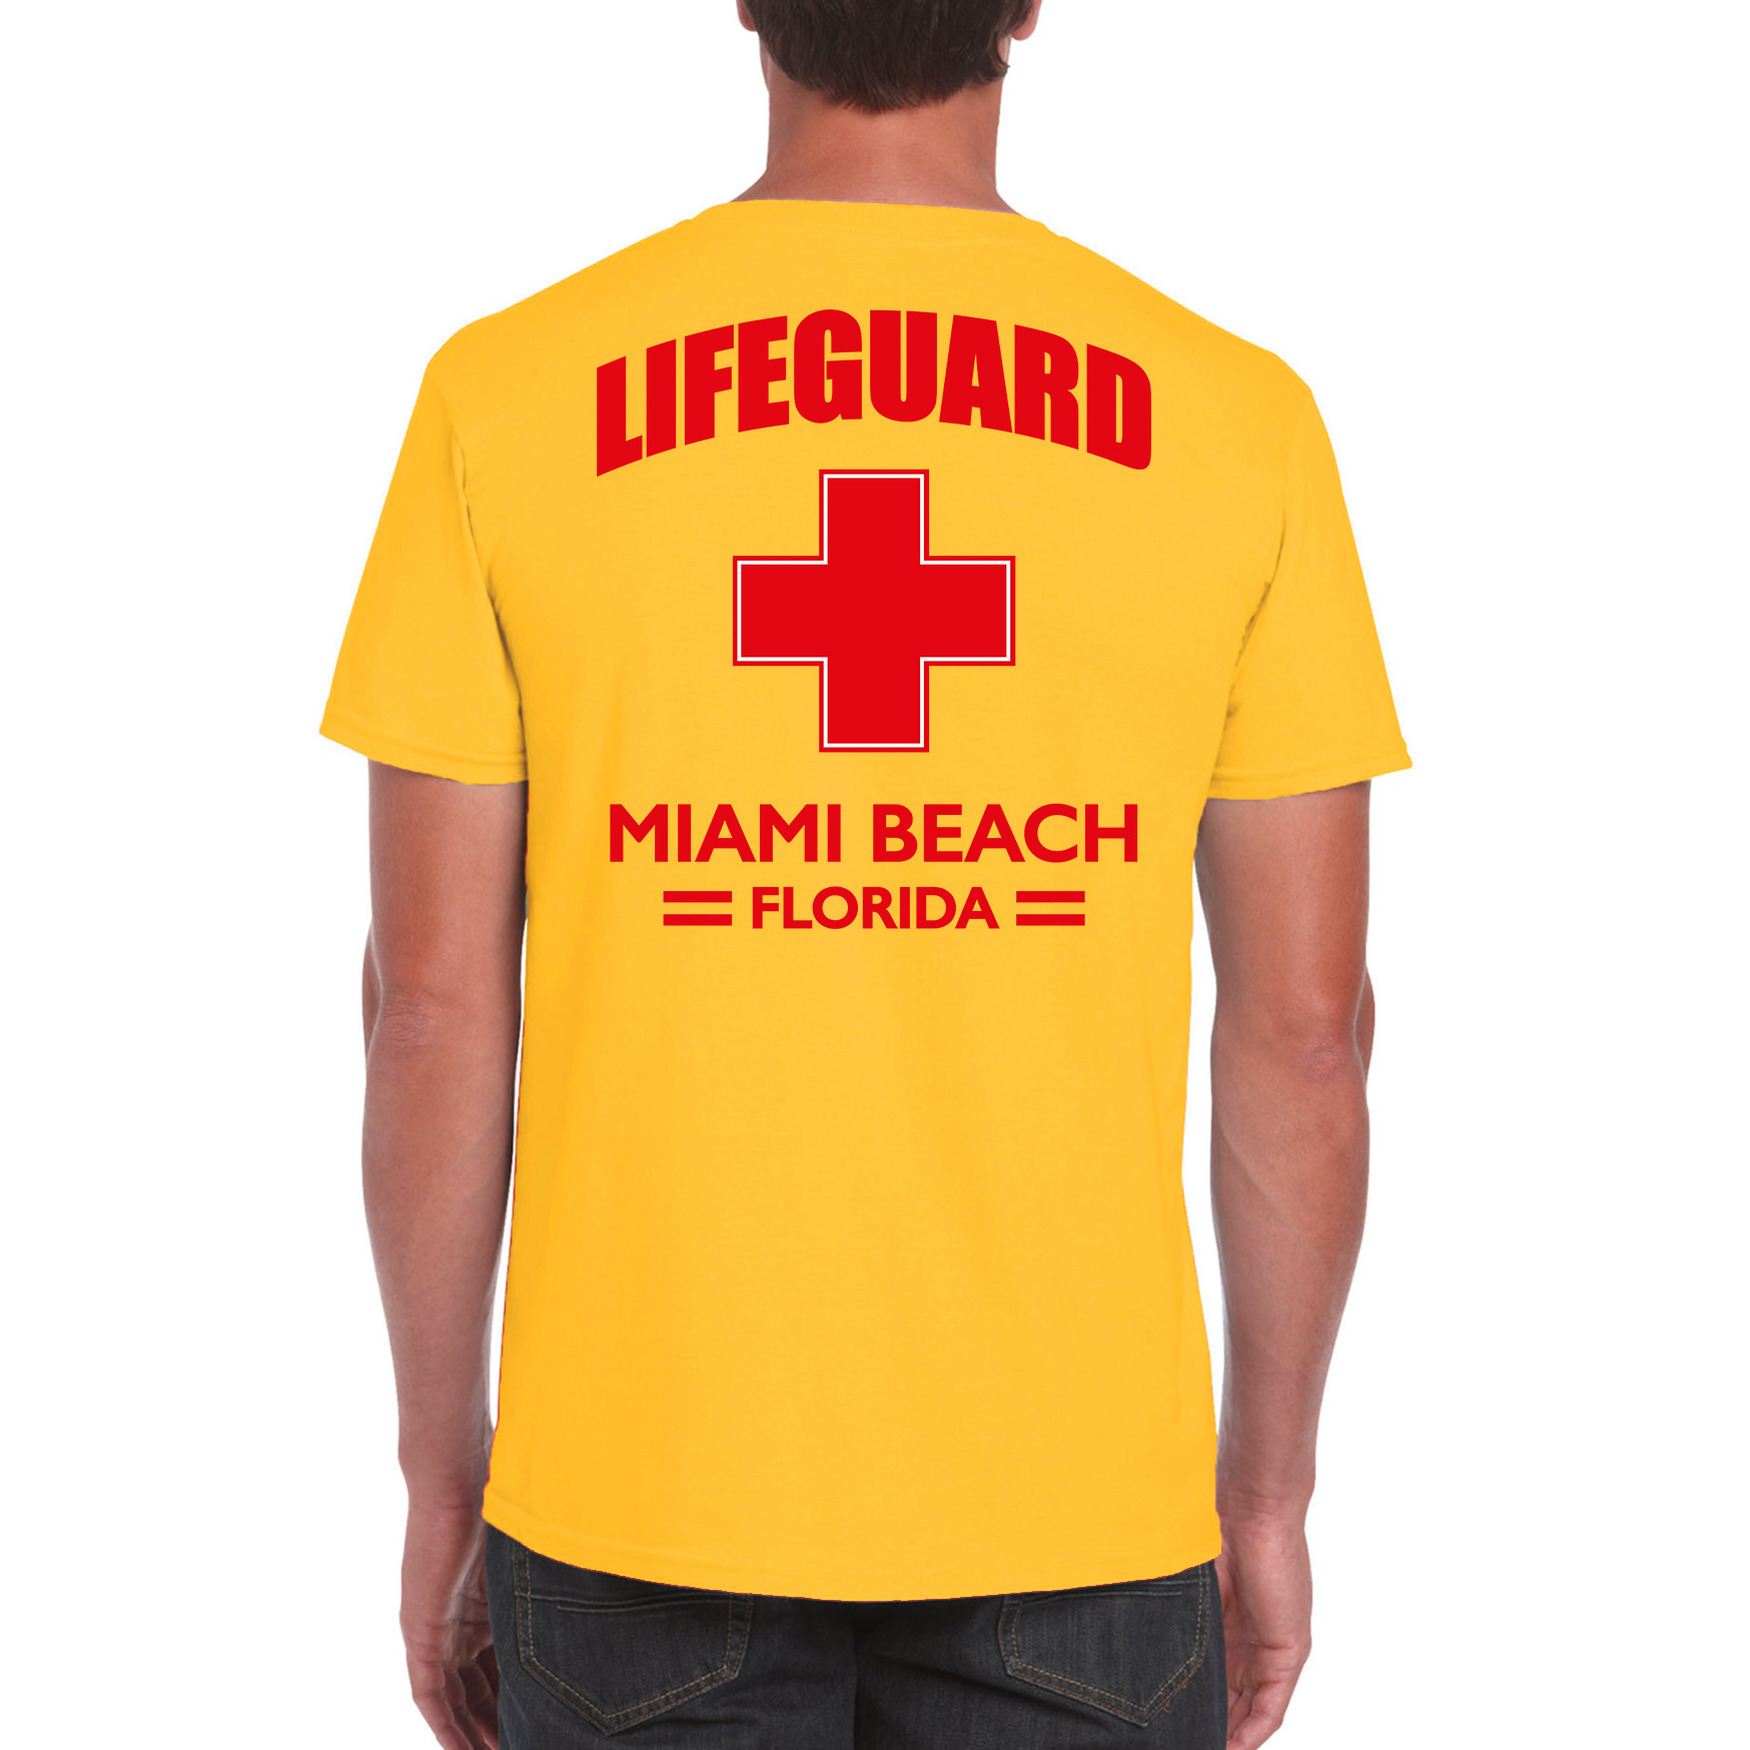 Lifeguard/ strandwacht verkleed t-shirt - shirt Lifeguard Miami Beach Florida geel voor heren